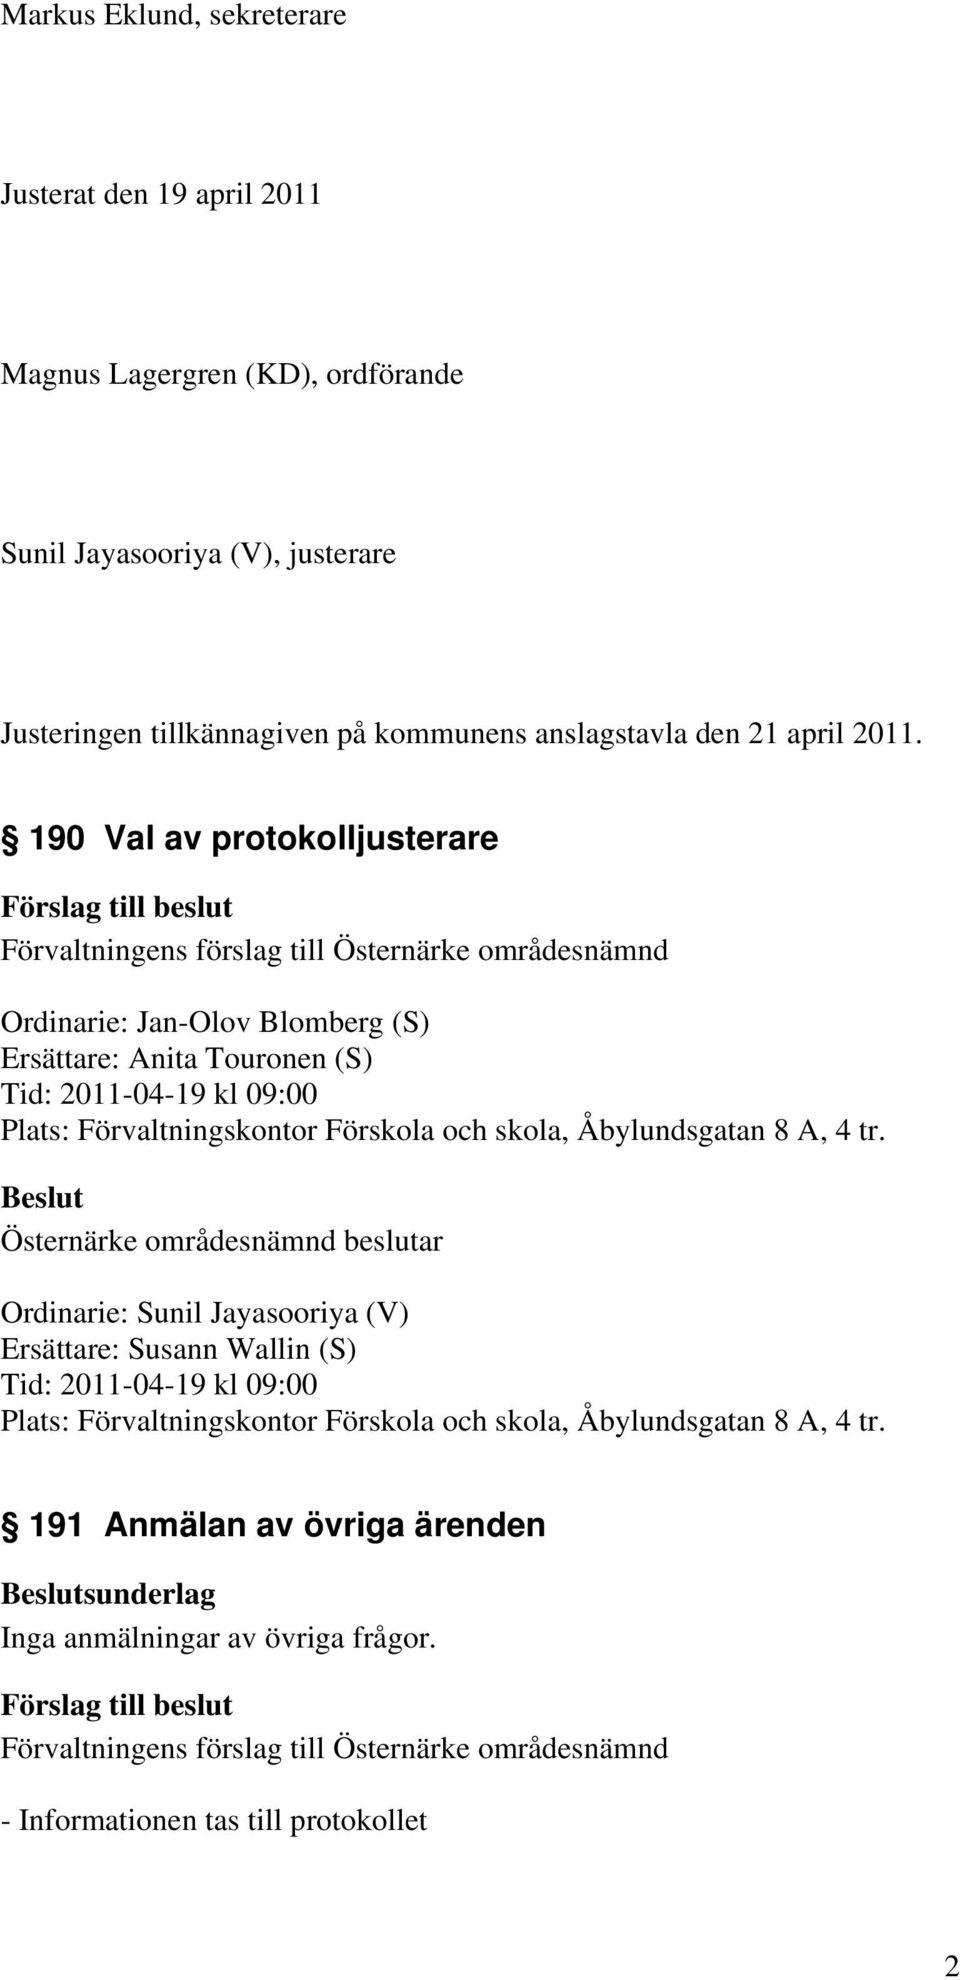 190 Val av protokolljusterare Ordinarie: Jan-Olov Blomberg (S) Ersättare: Anita Touronen (S) Tid: 2011-04-19 kl 09:00 Plats: Förvaltningskontor Förskola